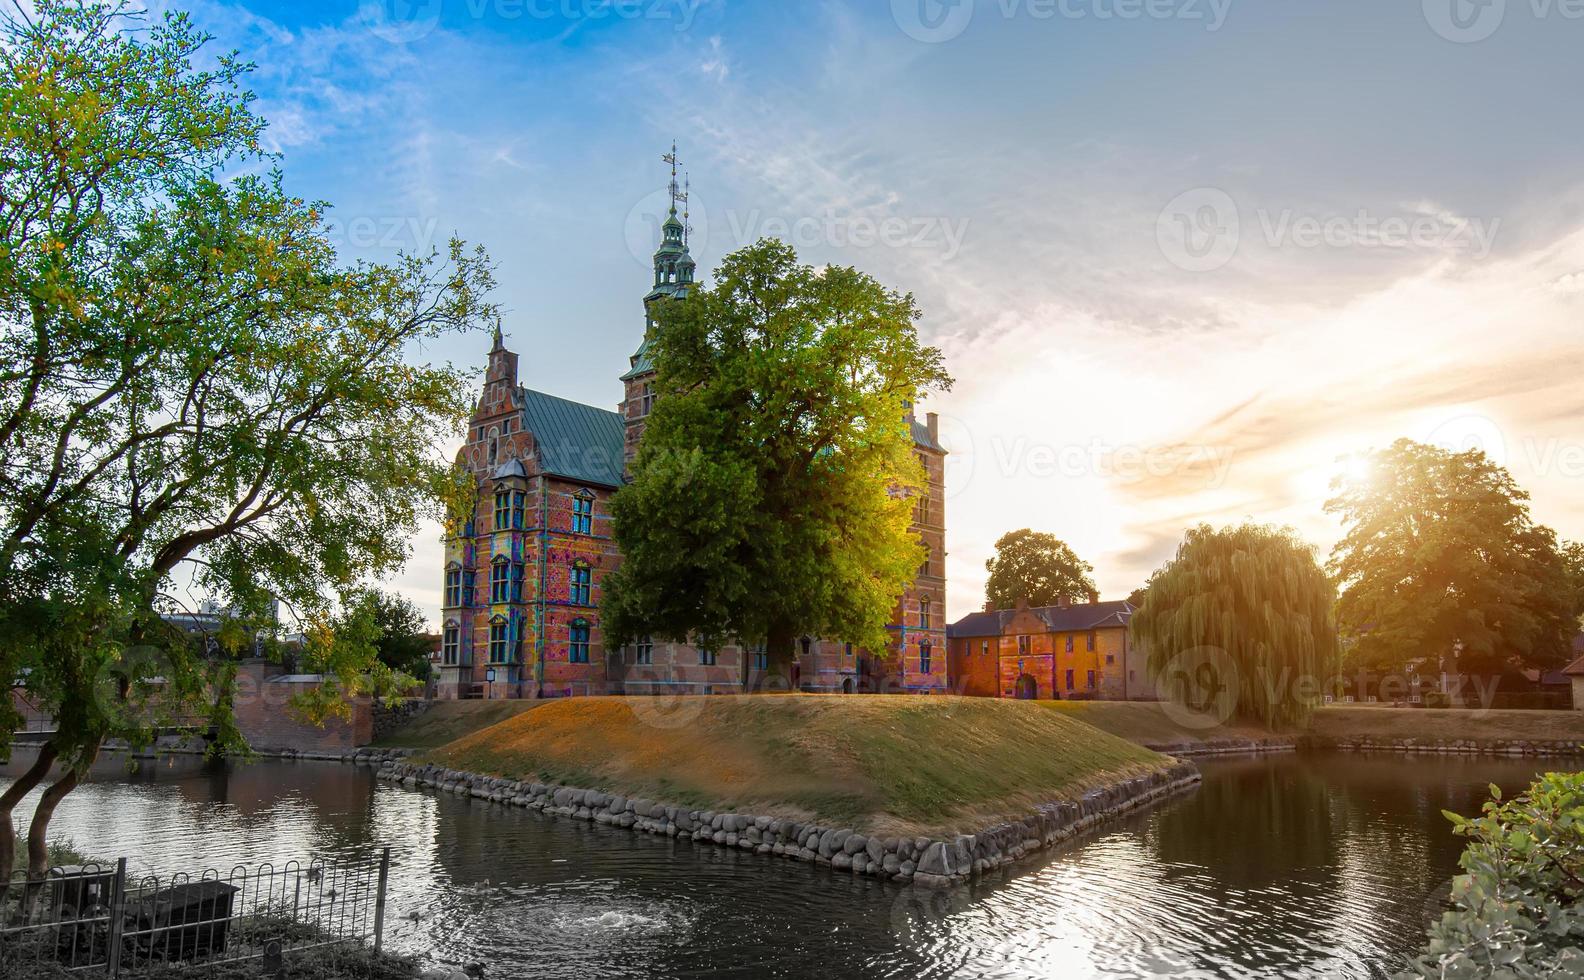 célèbre château de rosenborg, l'une des attractions touristiques les plus visitées de copenhague photo